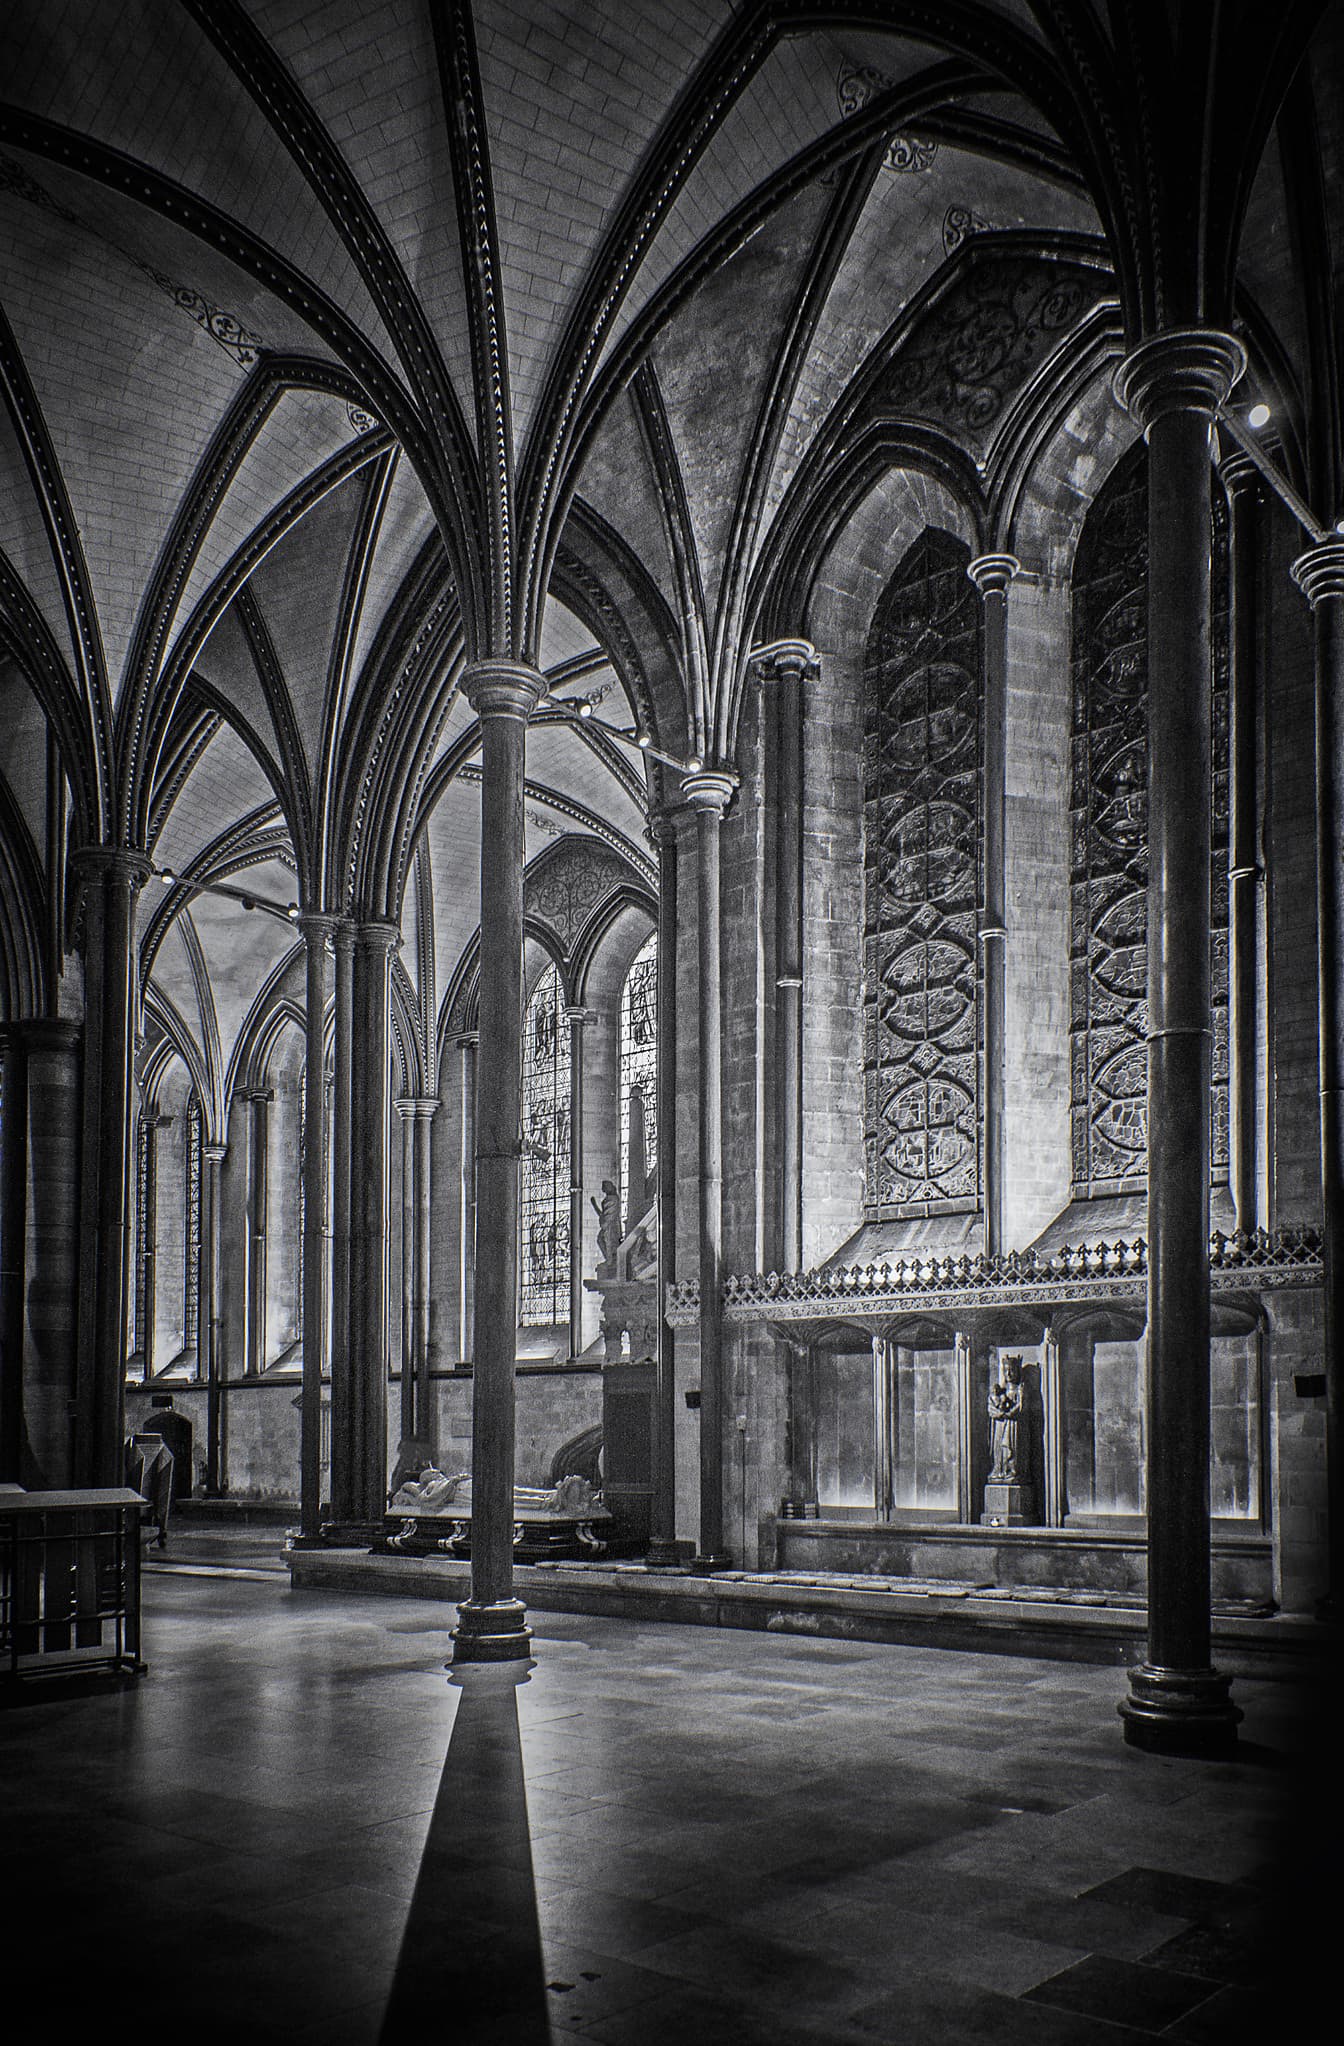 Intérieur de la cathédrale de Salisbury dans un style architectural gothique photo monochrome